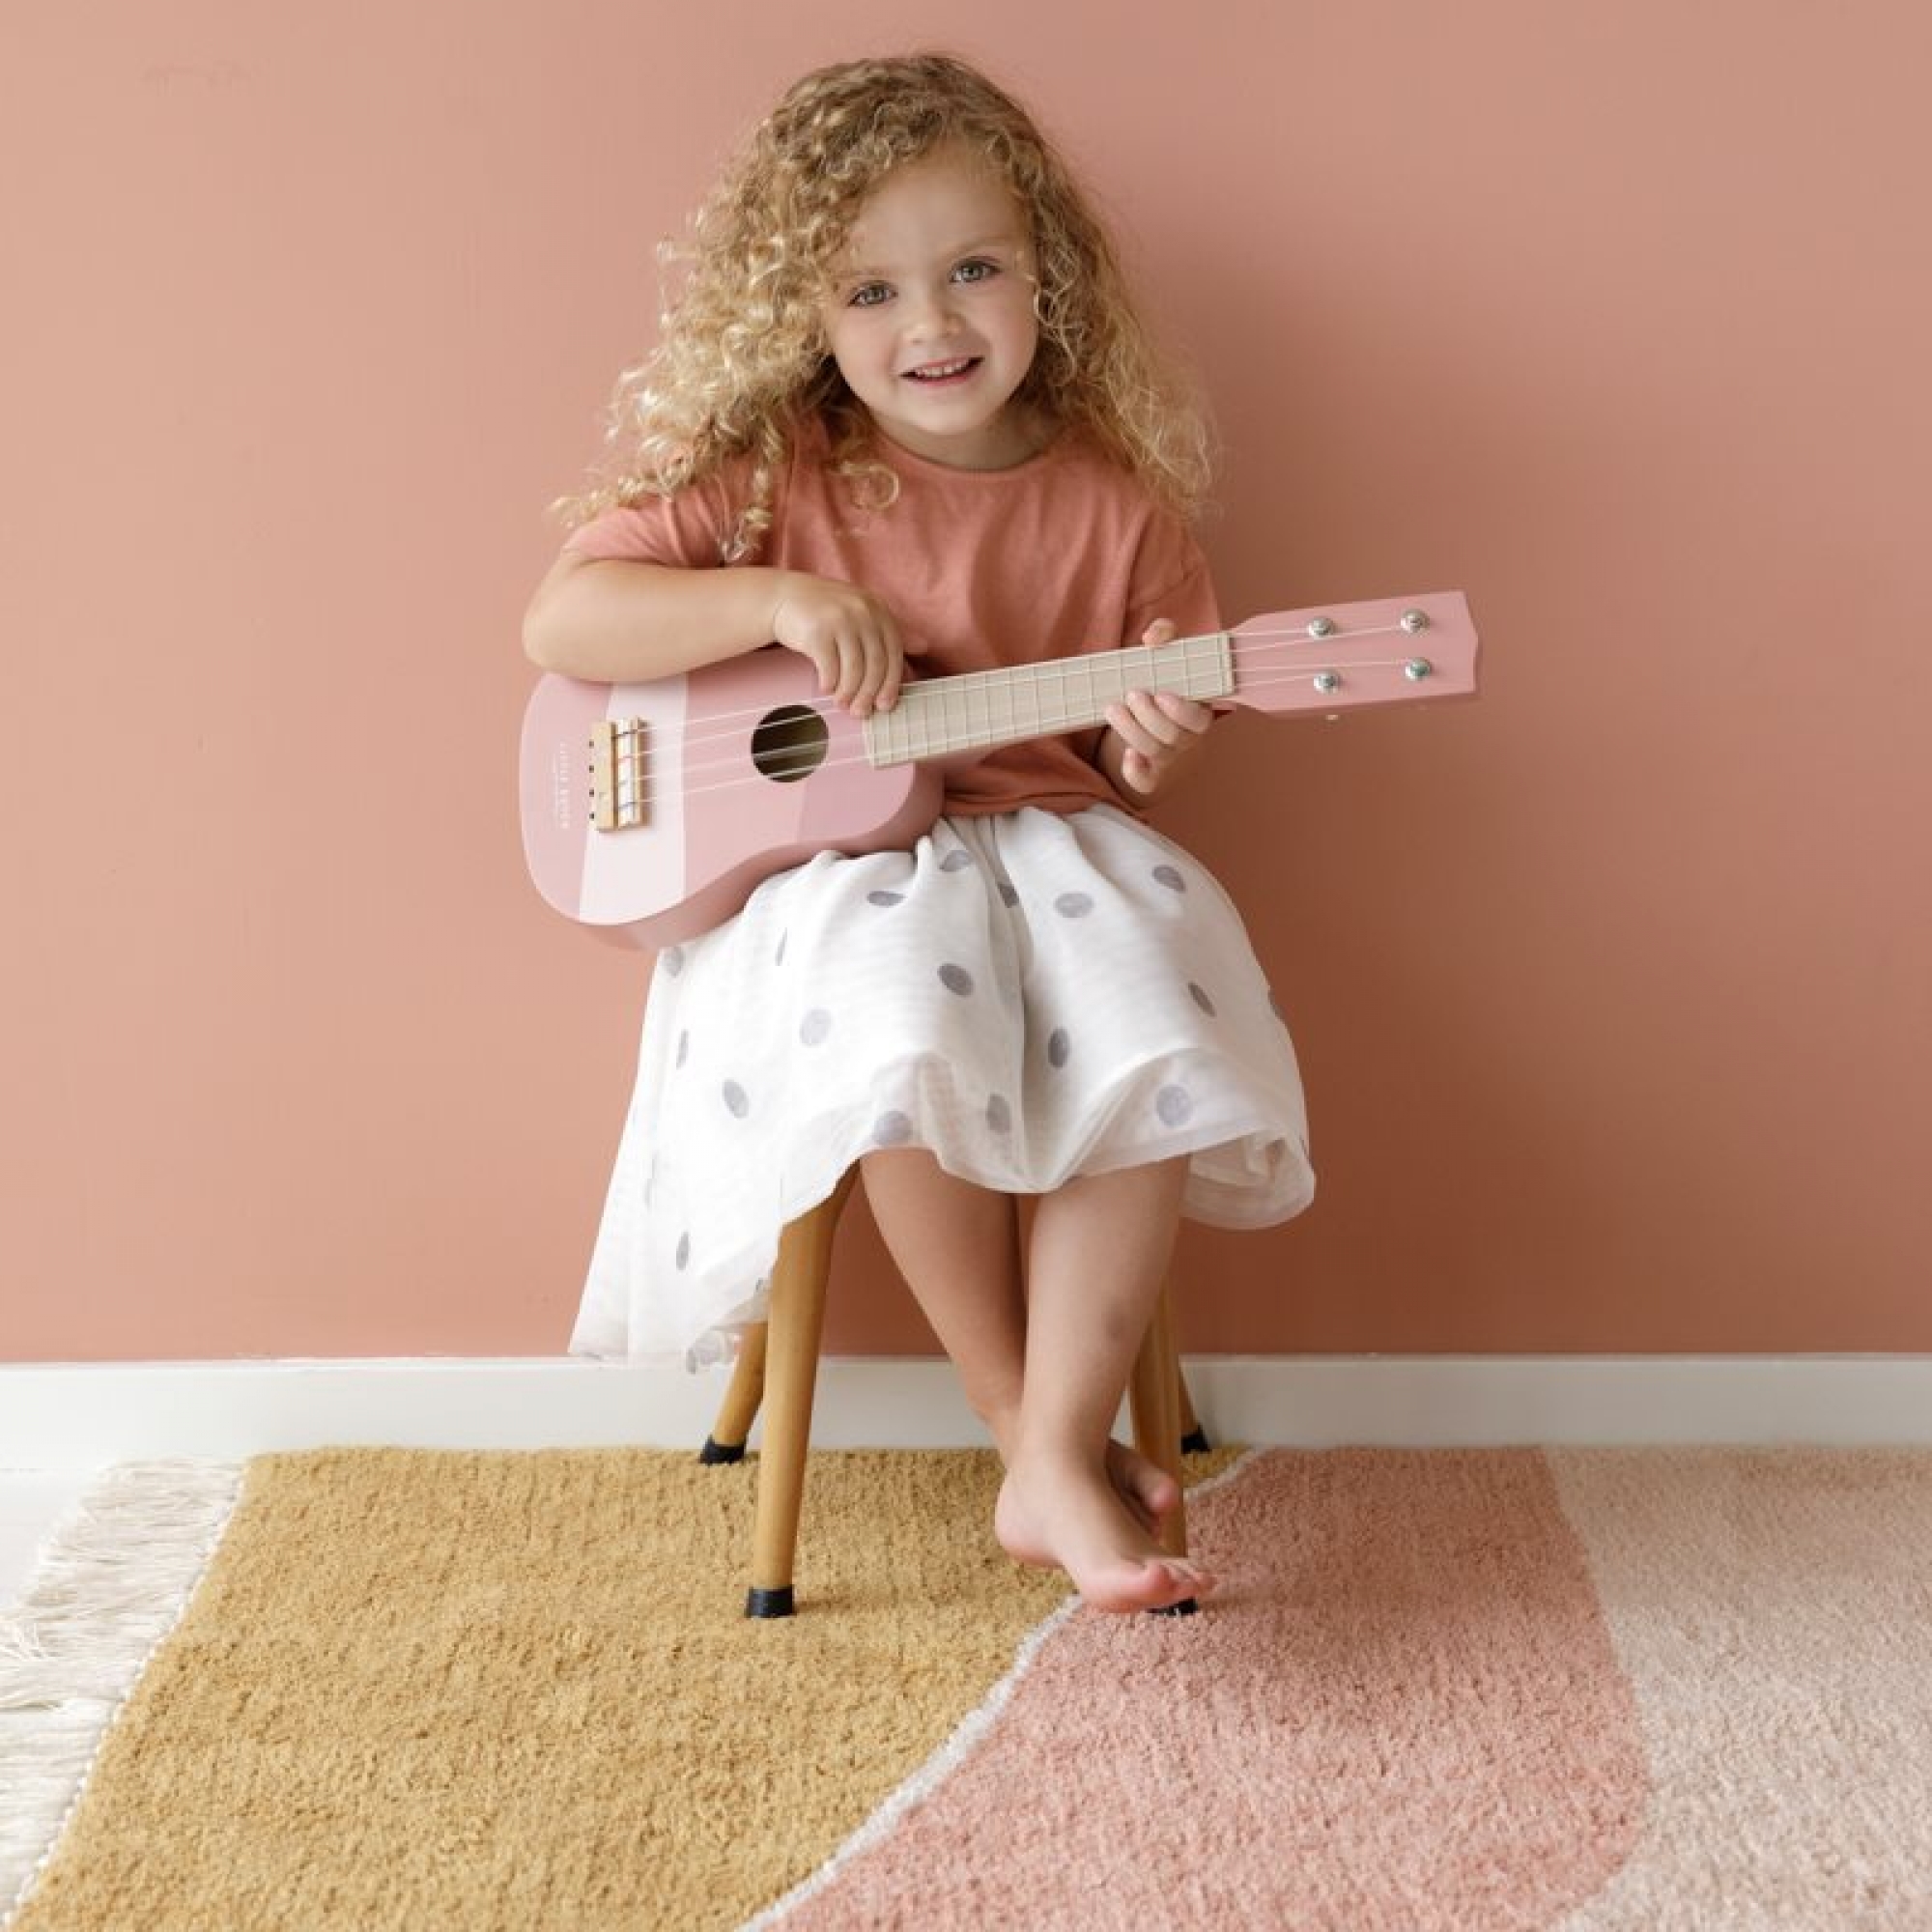 Sans Marque Guitare Musical pour Enfant Petit Model - Rose à prix pas cher